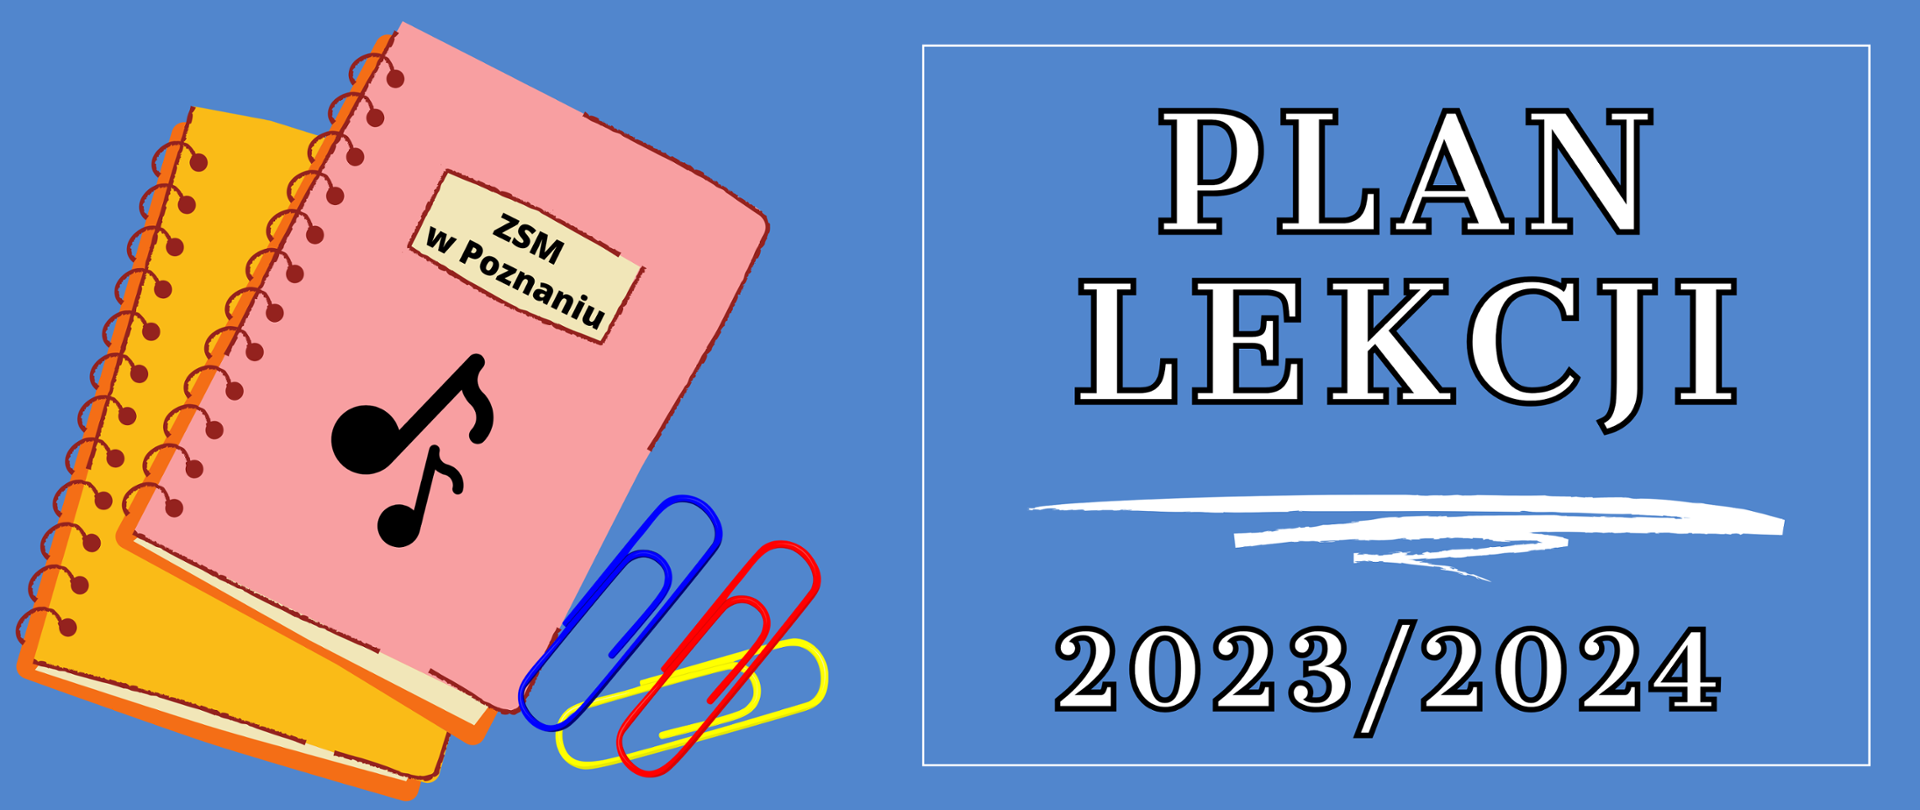 Grafika na niebieskim tle z rysunkiem kołonotatników i tekstem: "PLAN LEKCJI 2023/2024"